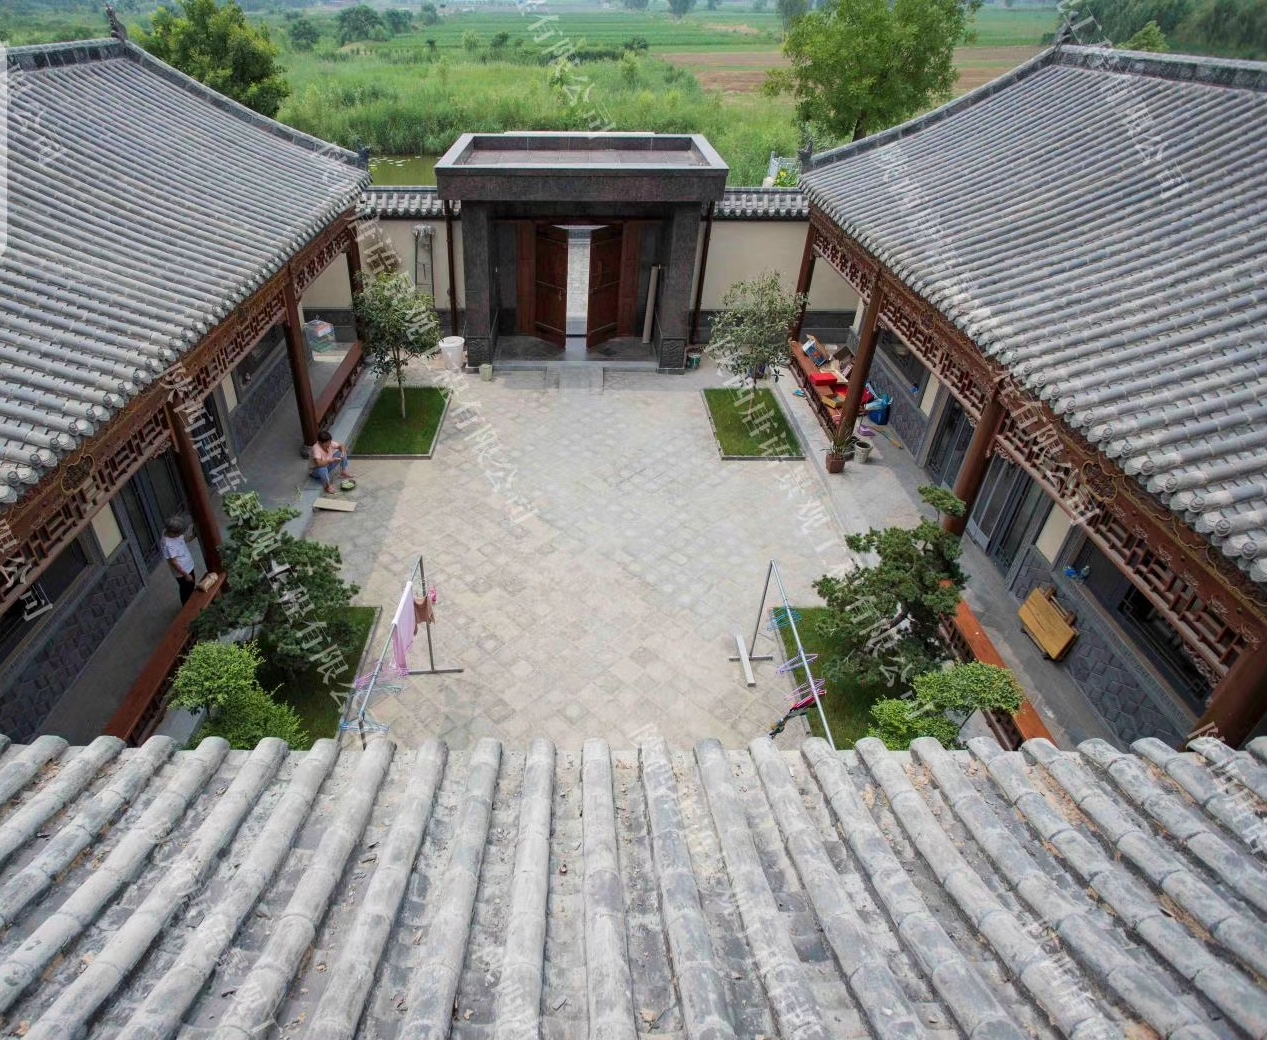 中式青砖小院 自建图片